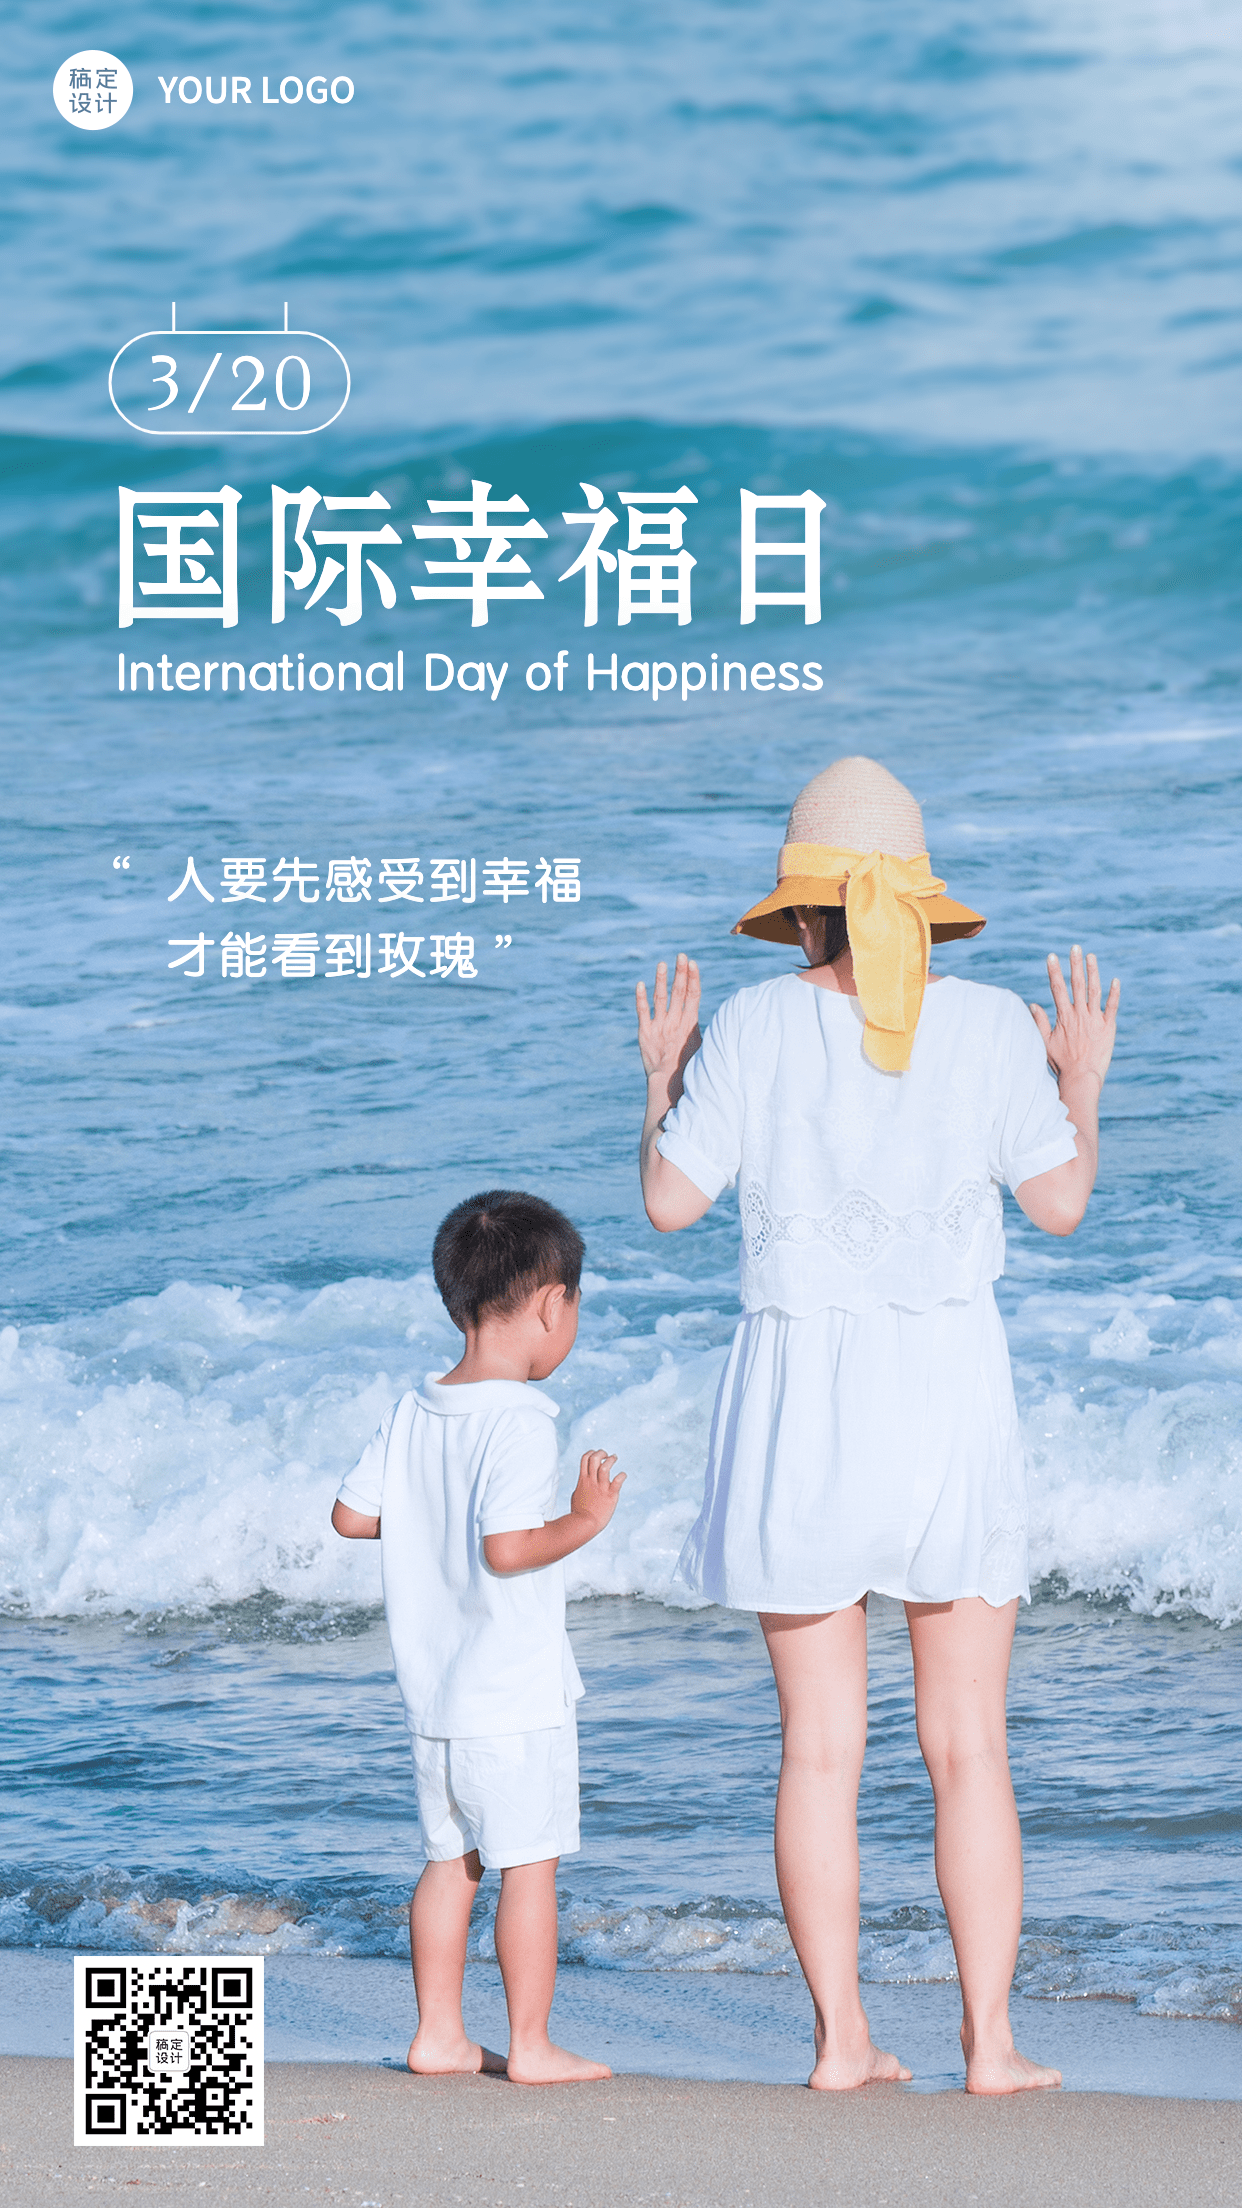 3.20国际幸福日节日宣传实景手机海报